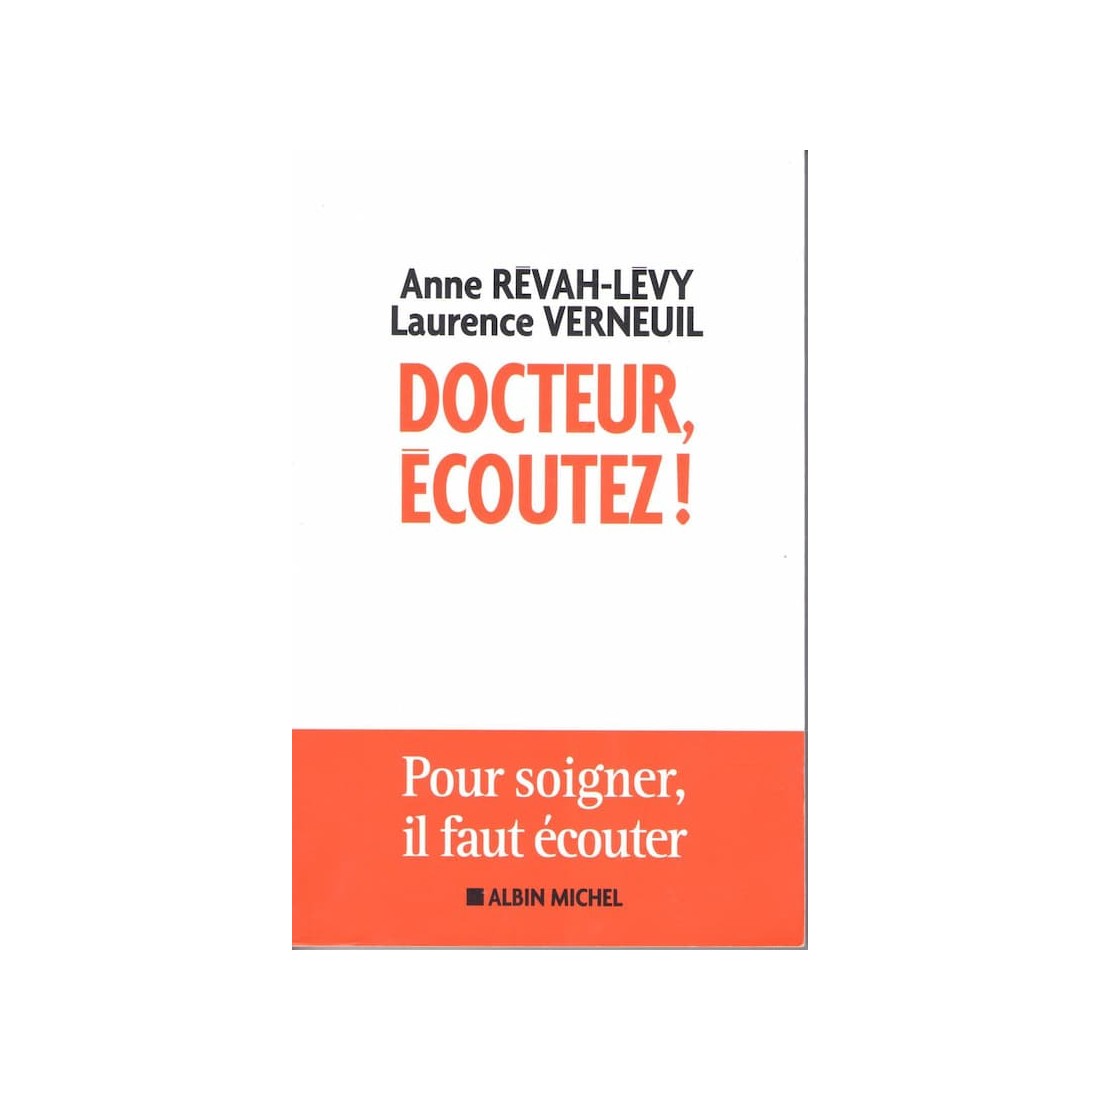 Docteur écoutez - Livre de Anne Revah Levy - Ocazlivres.com